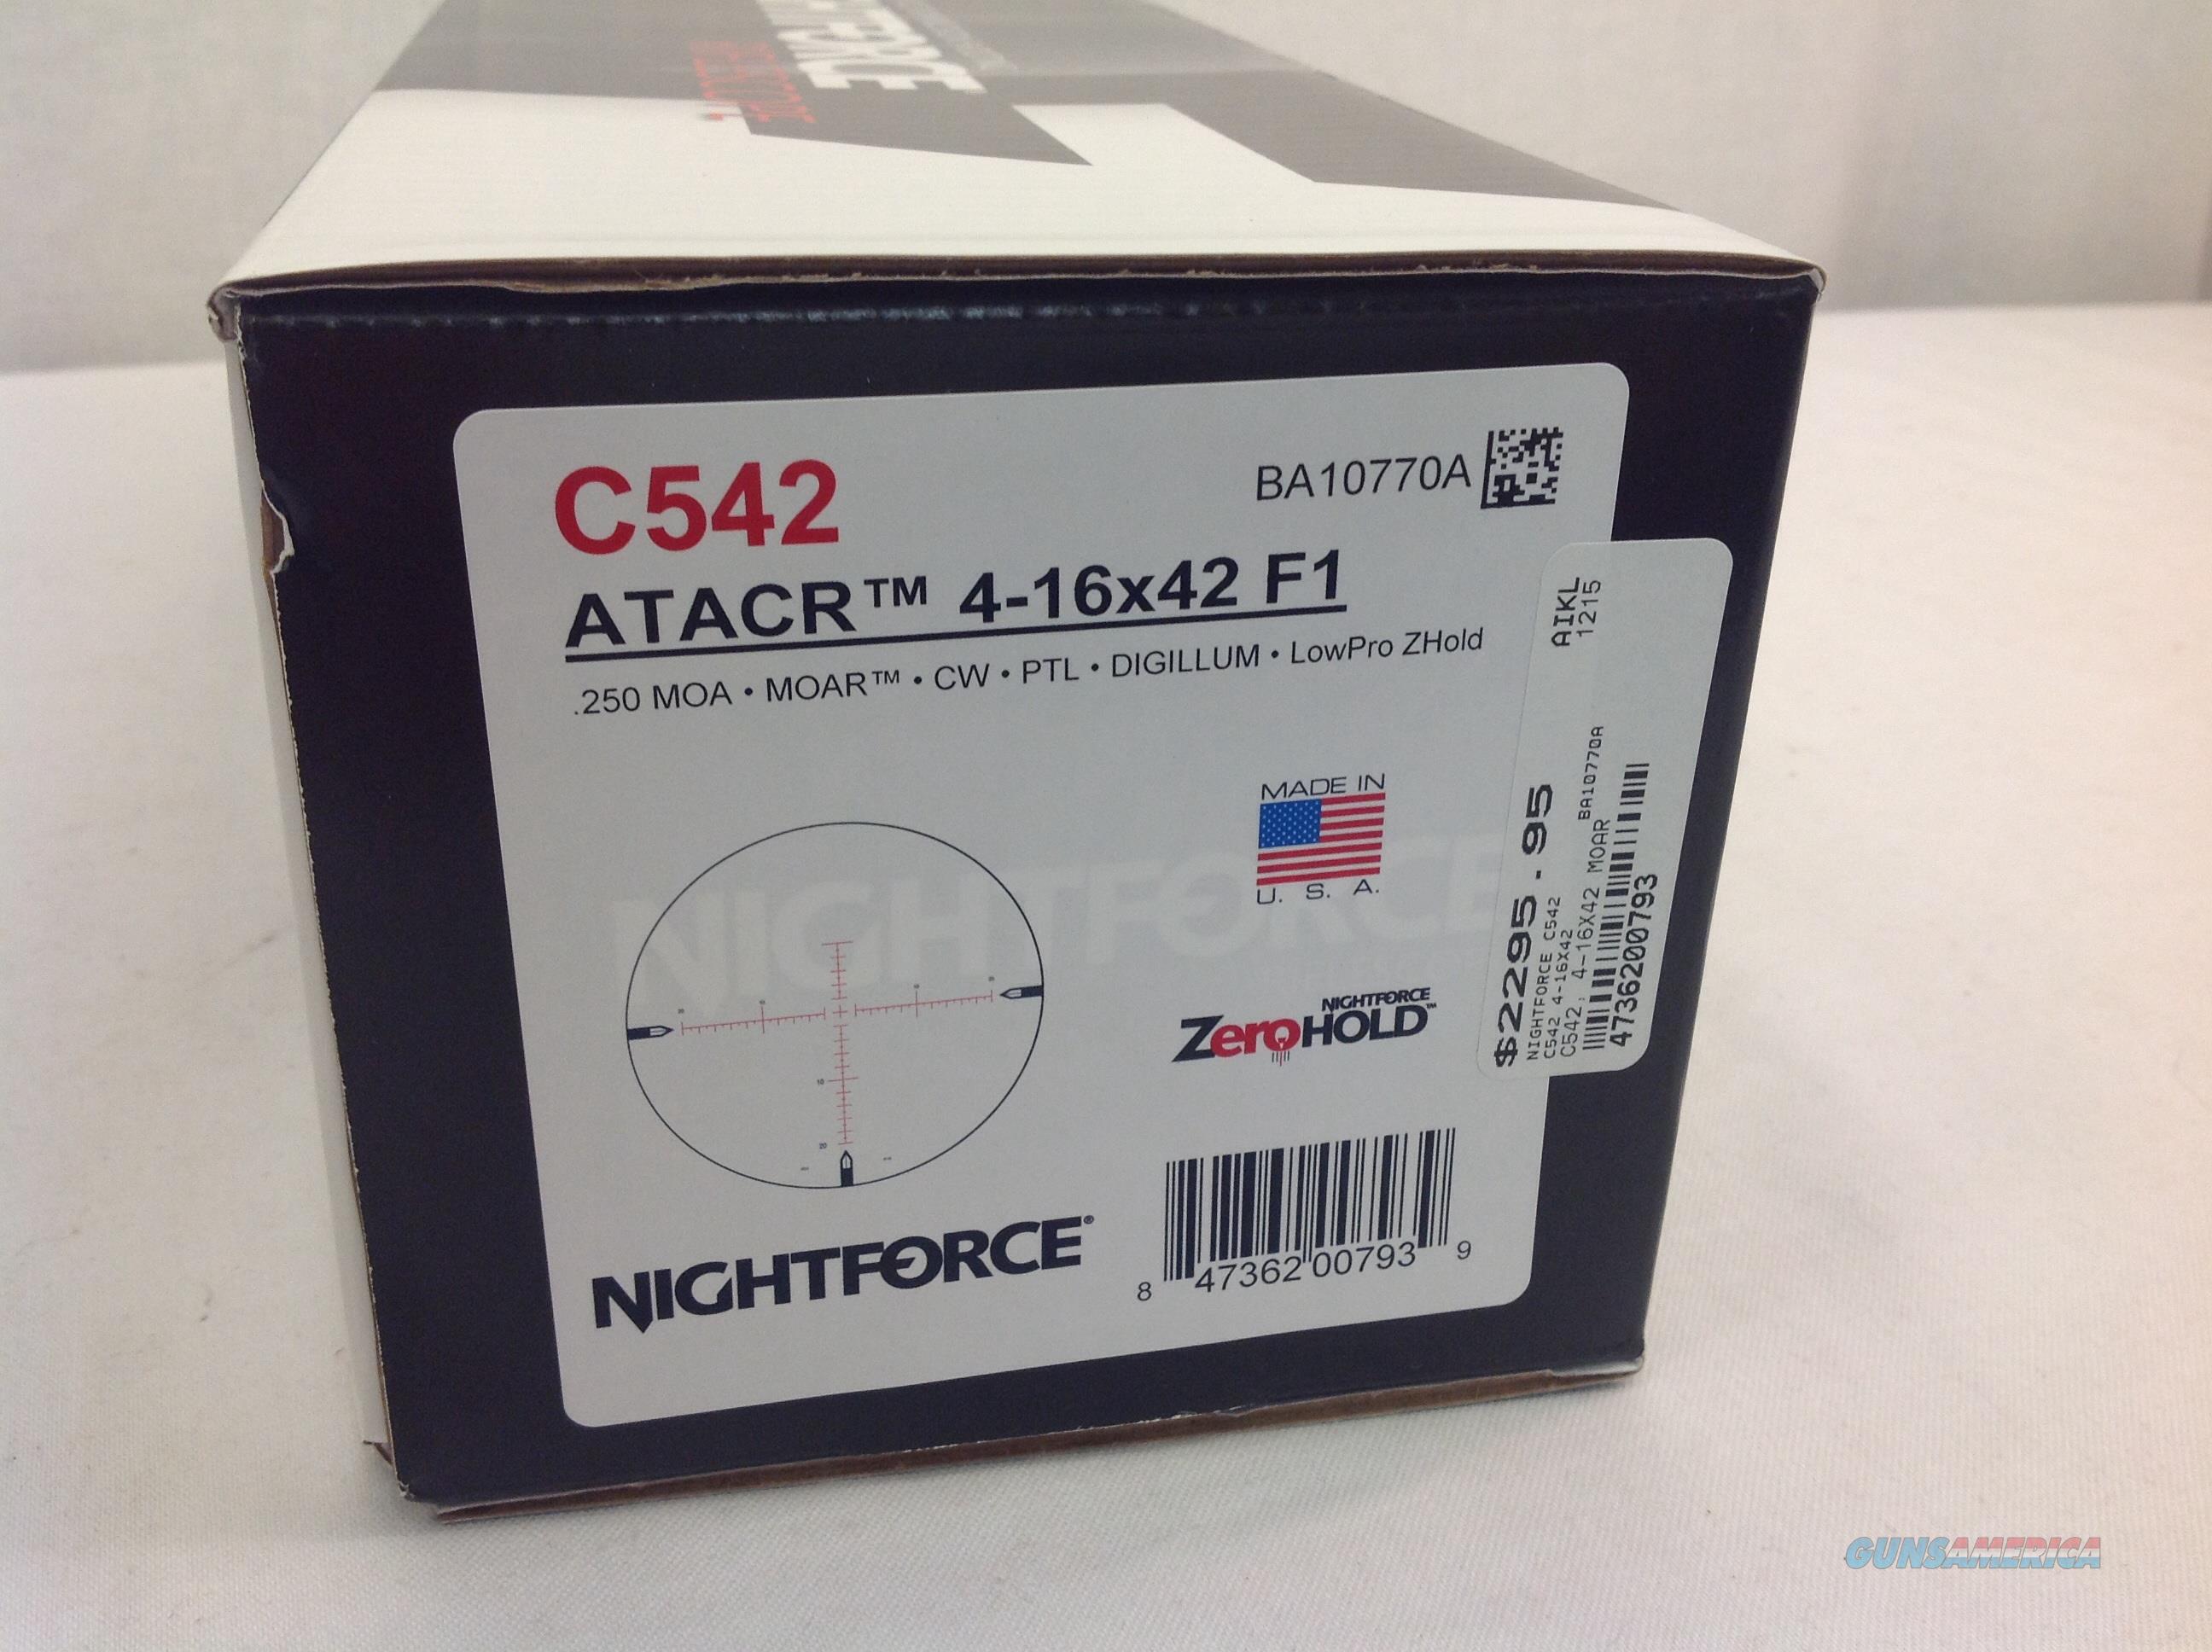 nightforce scope serial number